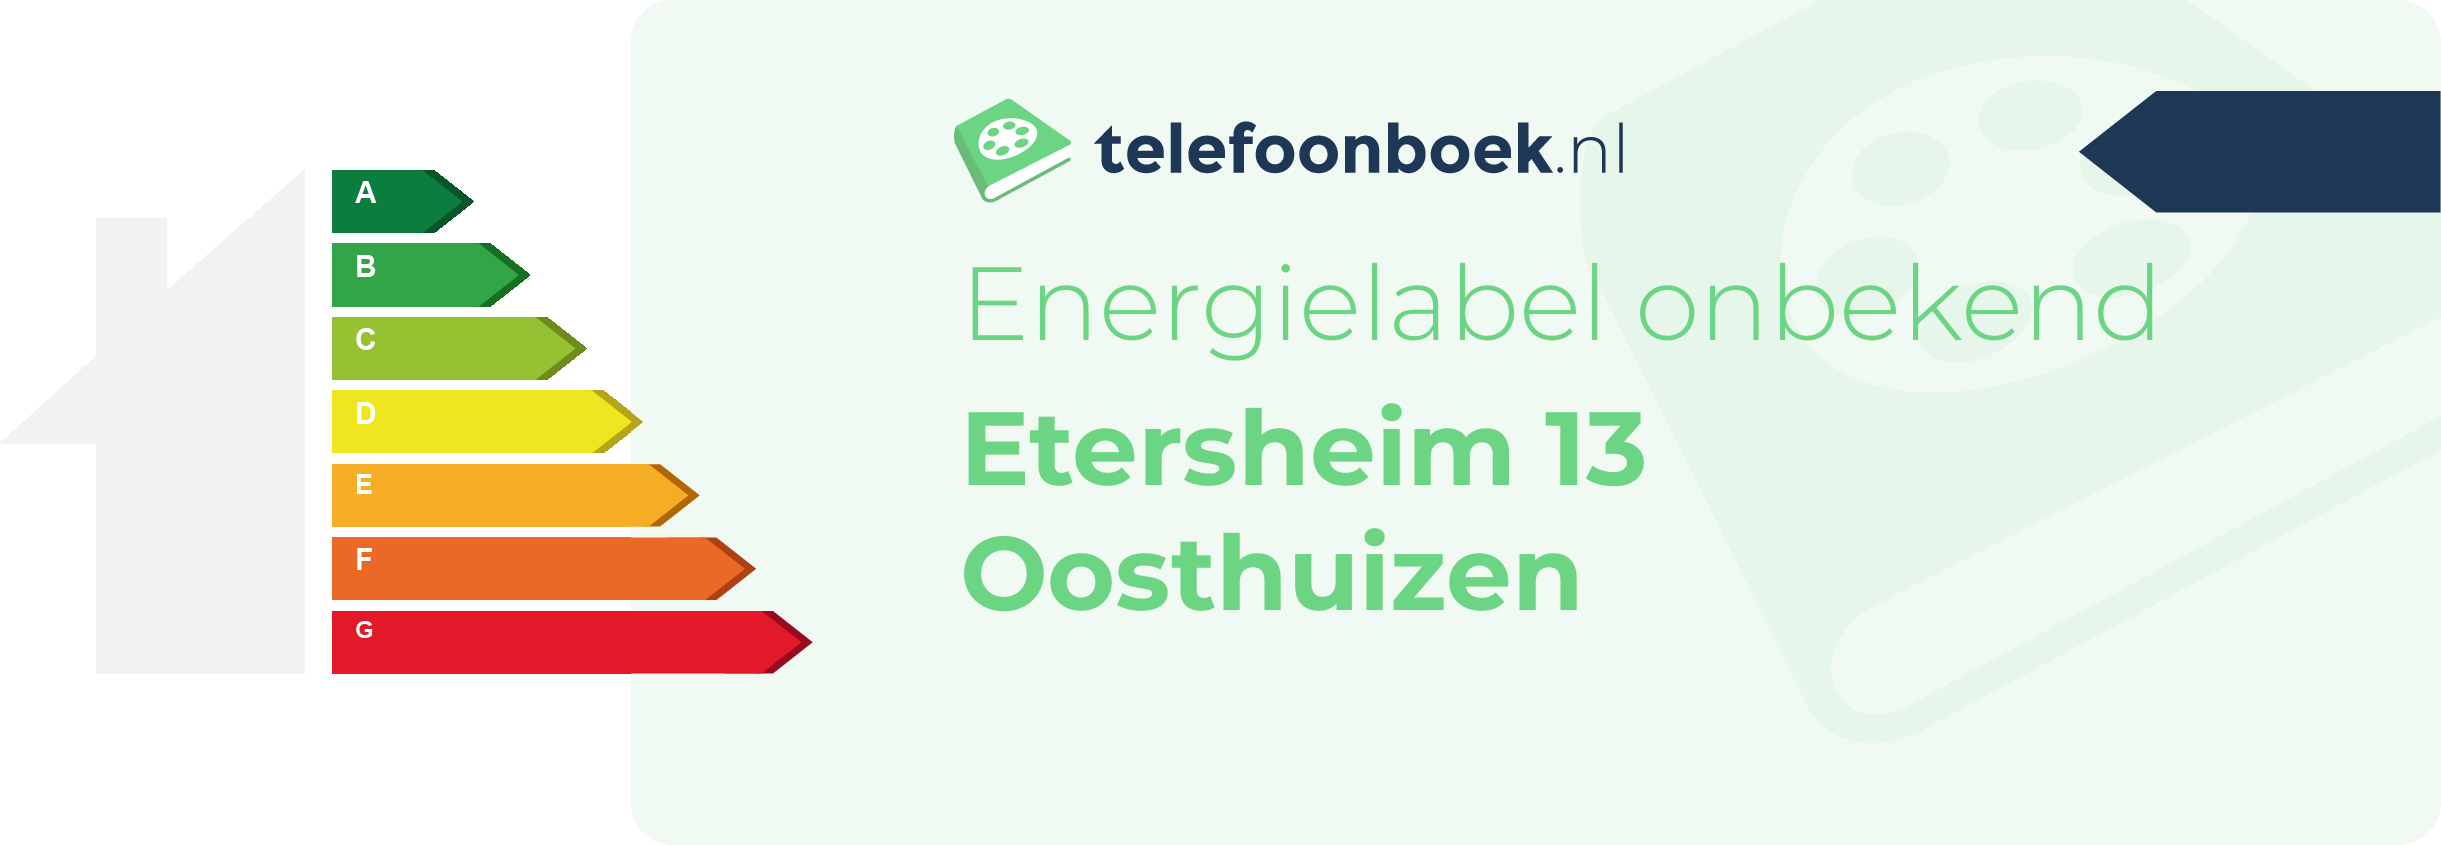 Energielabel Etersheim 13 Oosthuizen